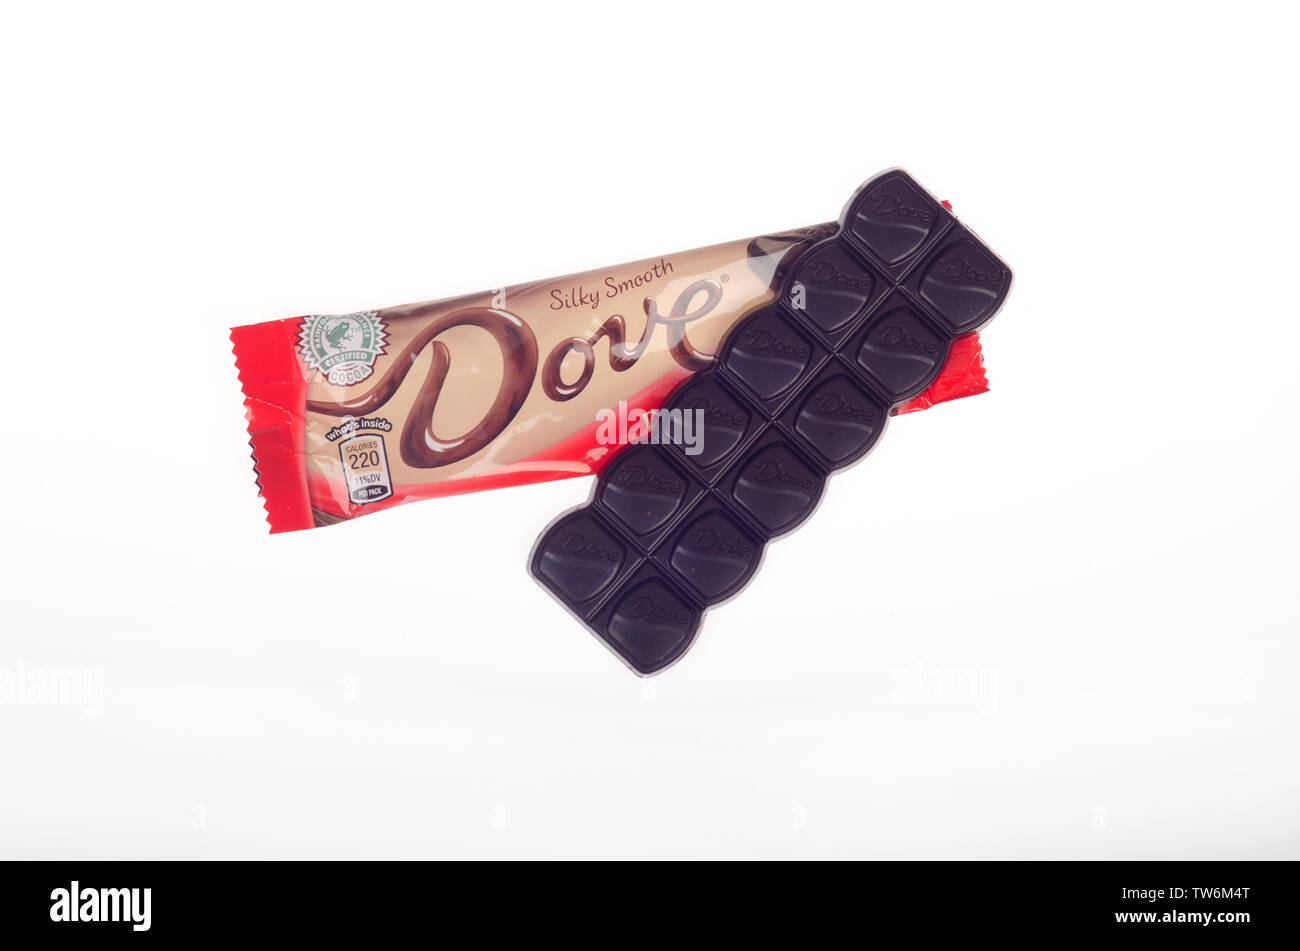 Paloma golosinas de chocolate oscuro por Mars, Inc. con envoltura abierta Foto de stock